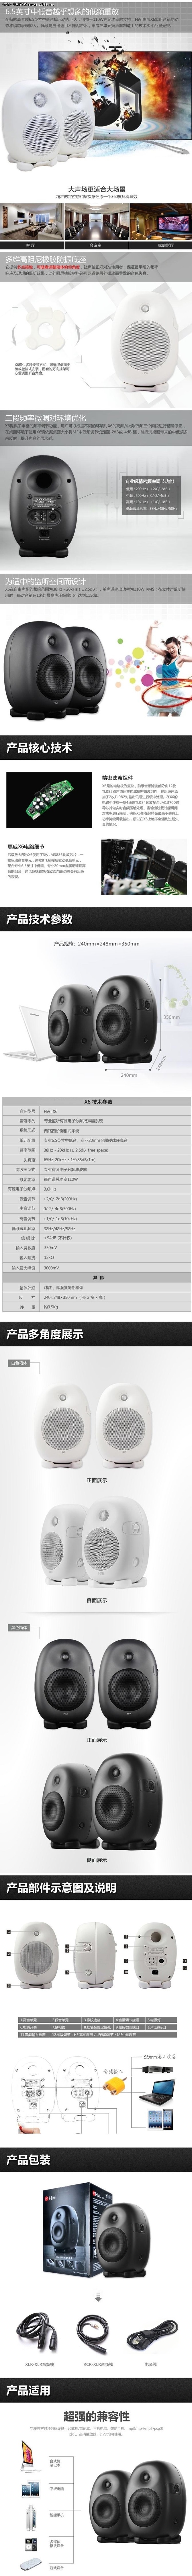 专属的音乐旅程 惠威 X6单件售4800元